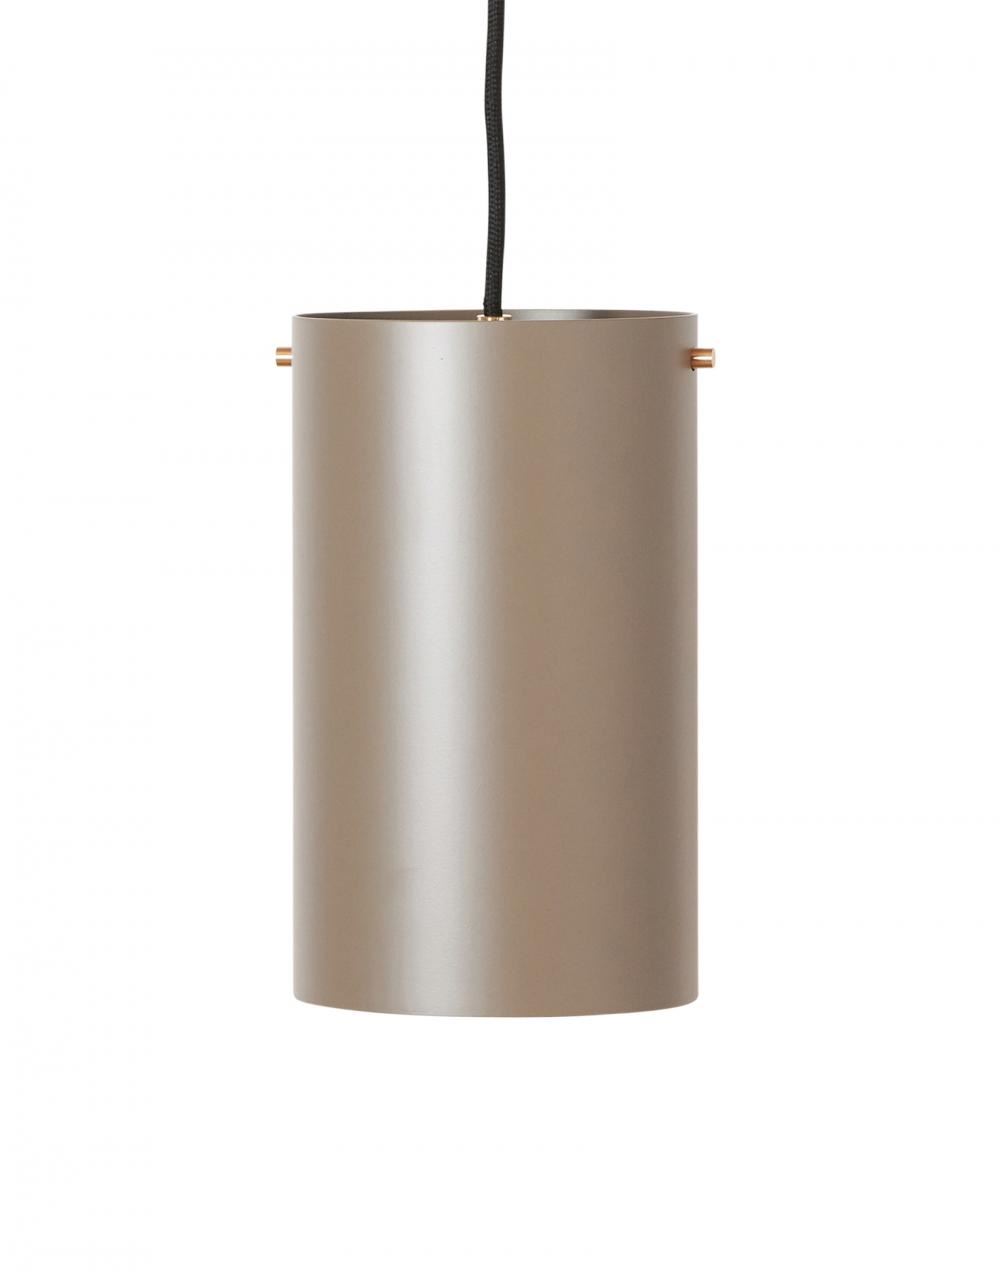 Rubn Volume 1 Pendant Large Soil Grey Brass Designer Pendant Lighting